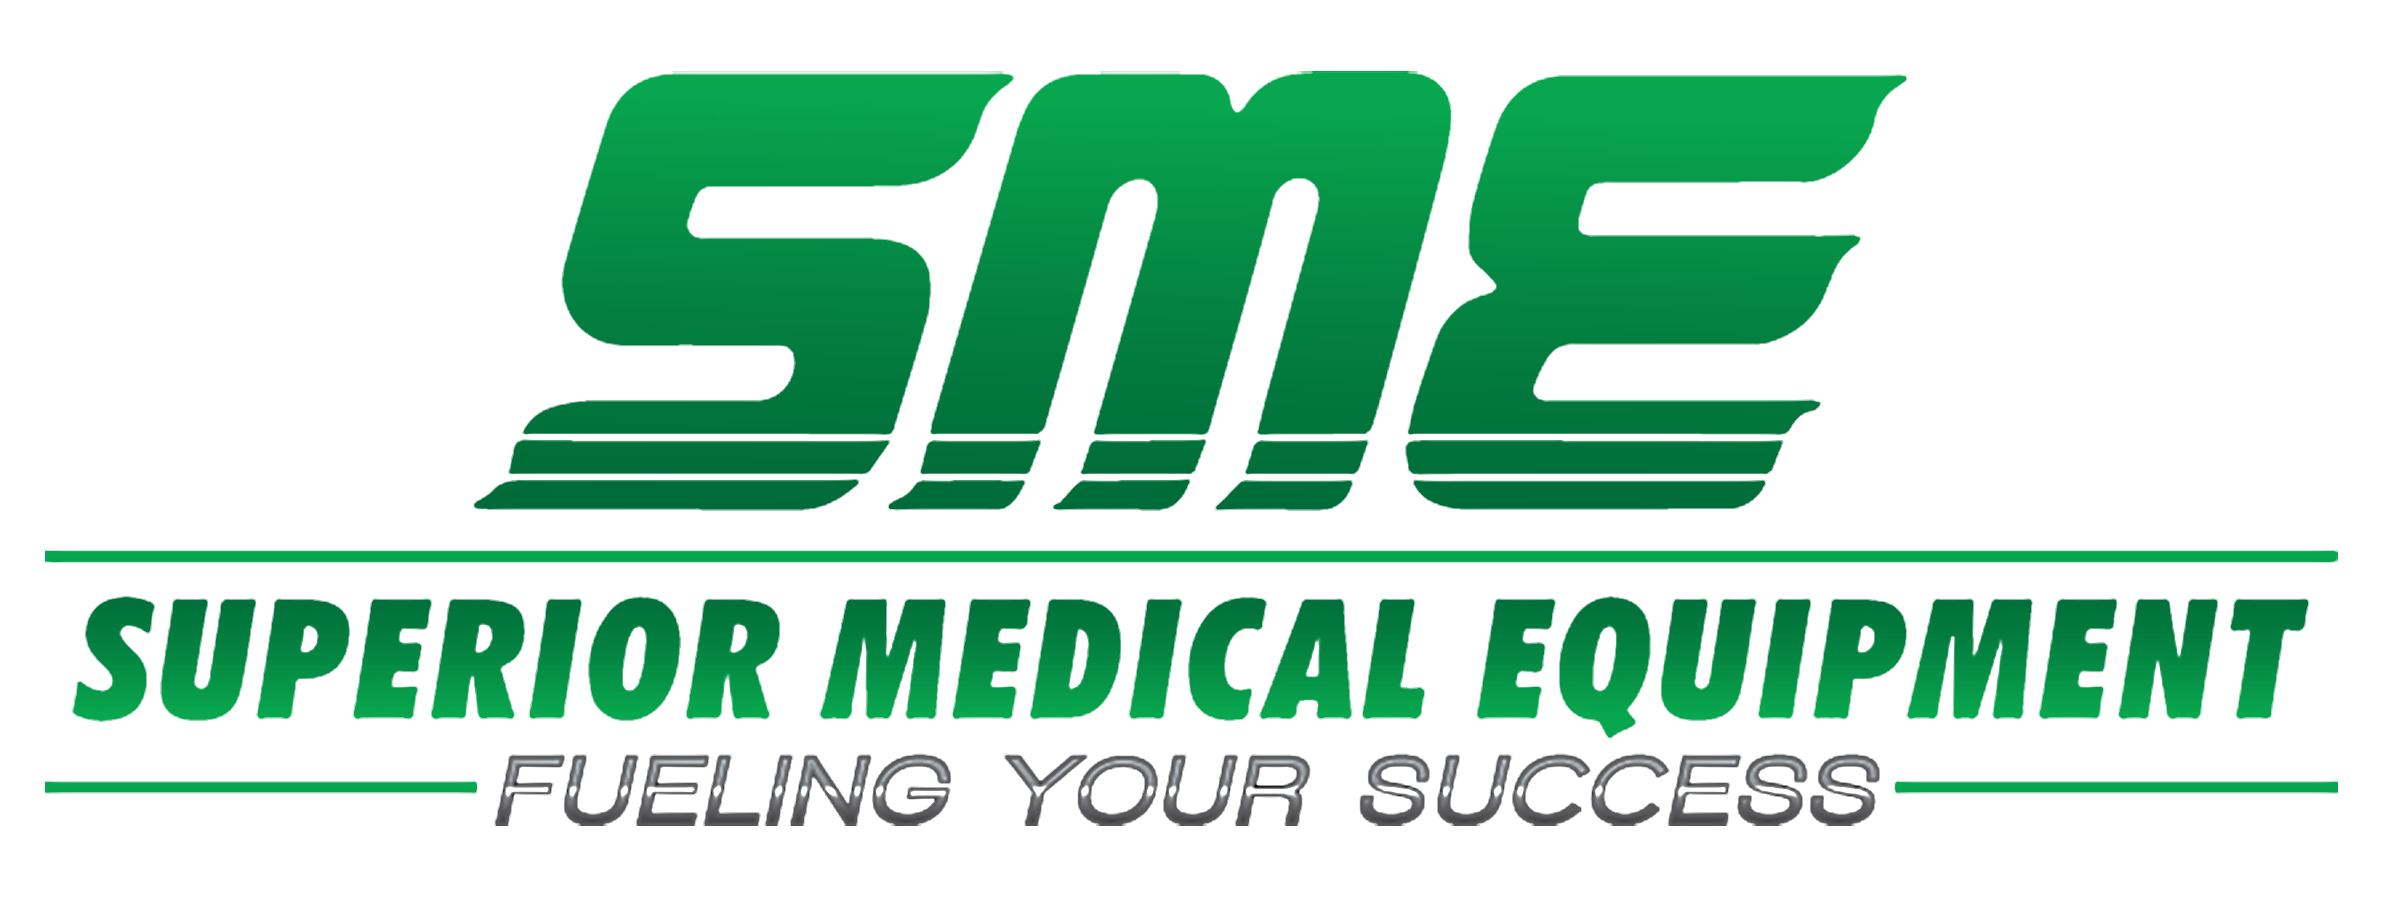 SME-Inc-USA-Logo-w-Tagline